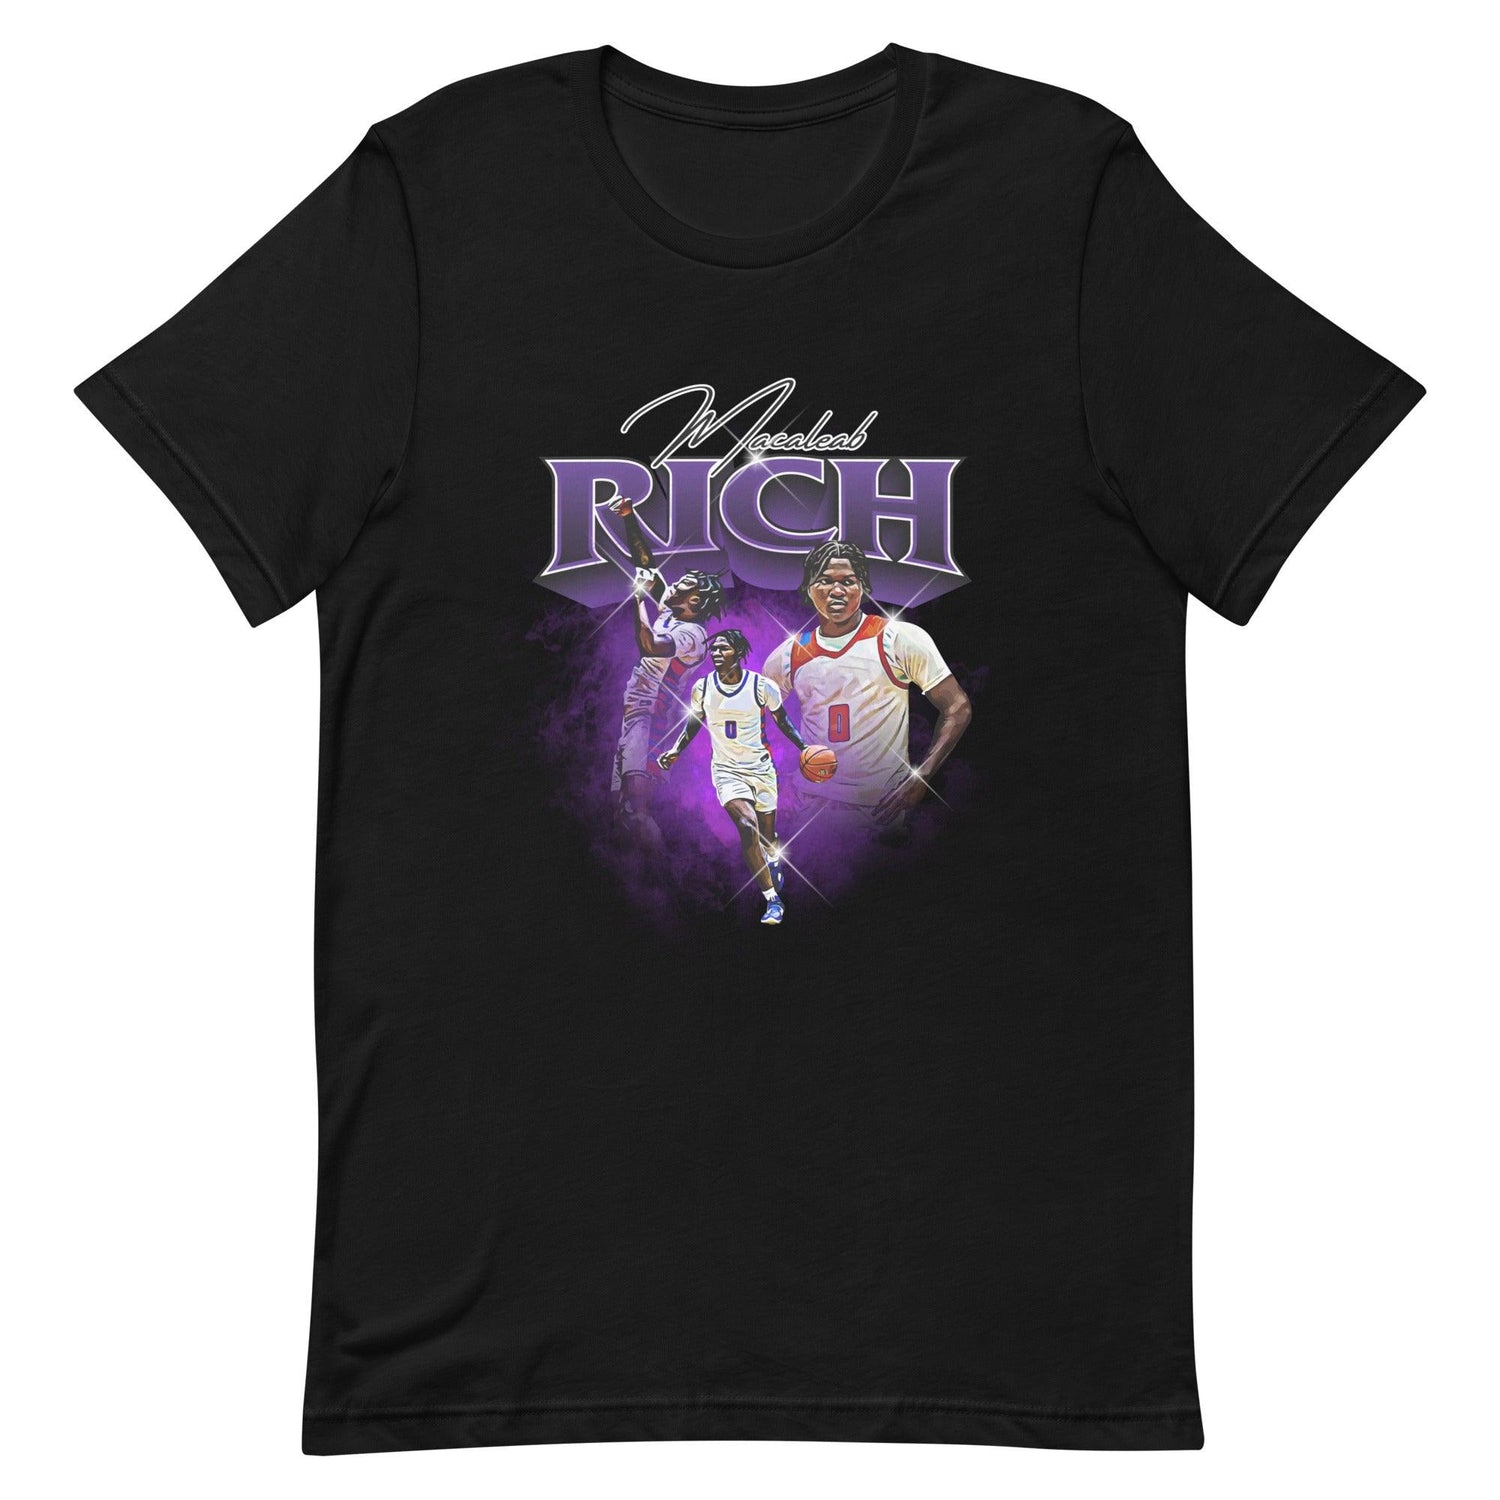 Macaleab Rich "Vintage" t-shirt - Fan Arch